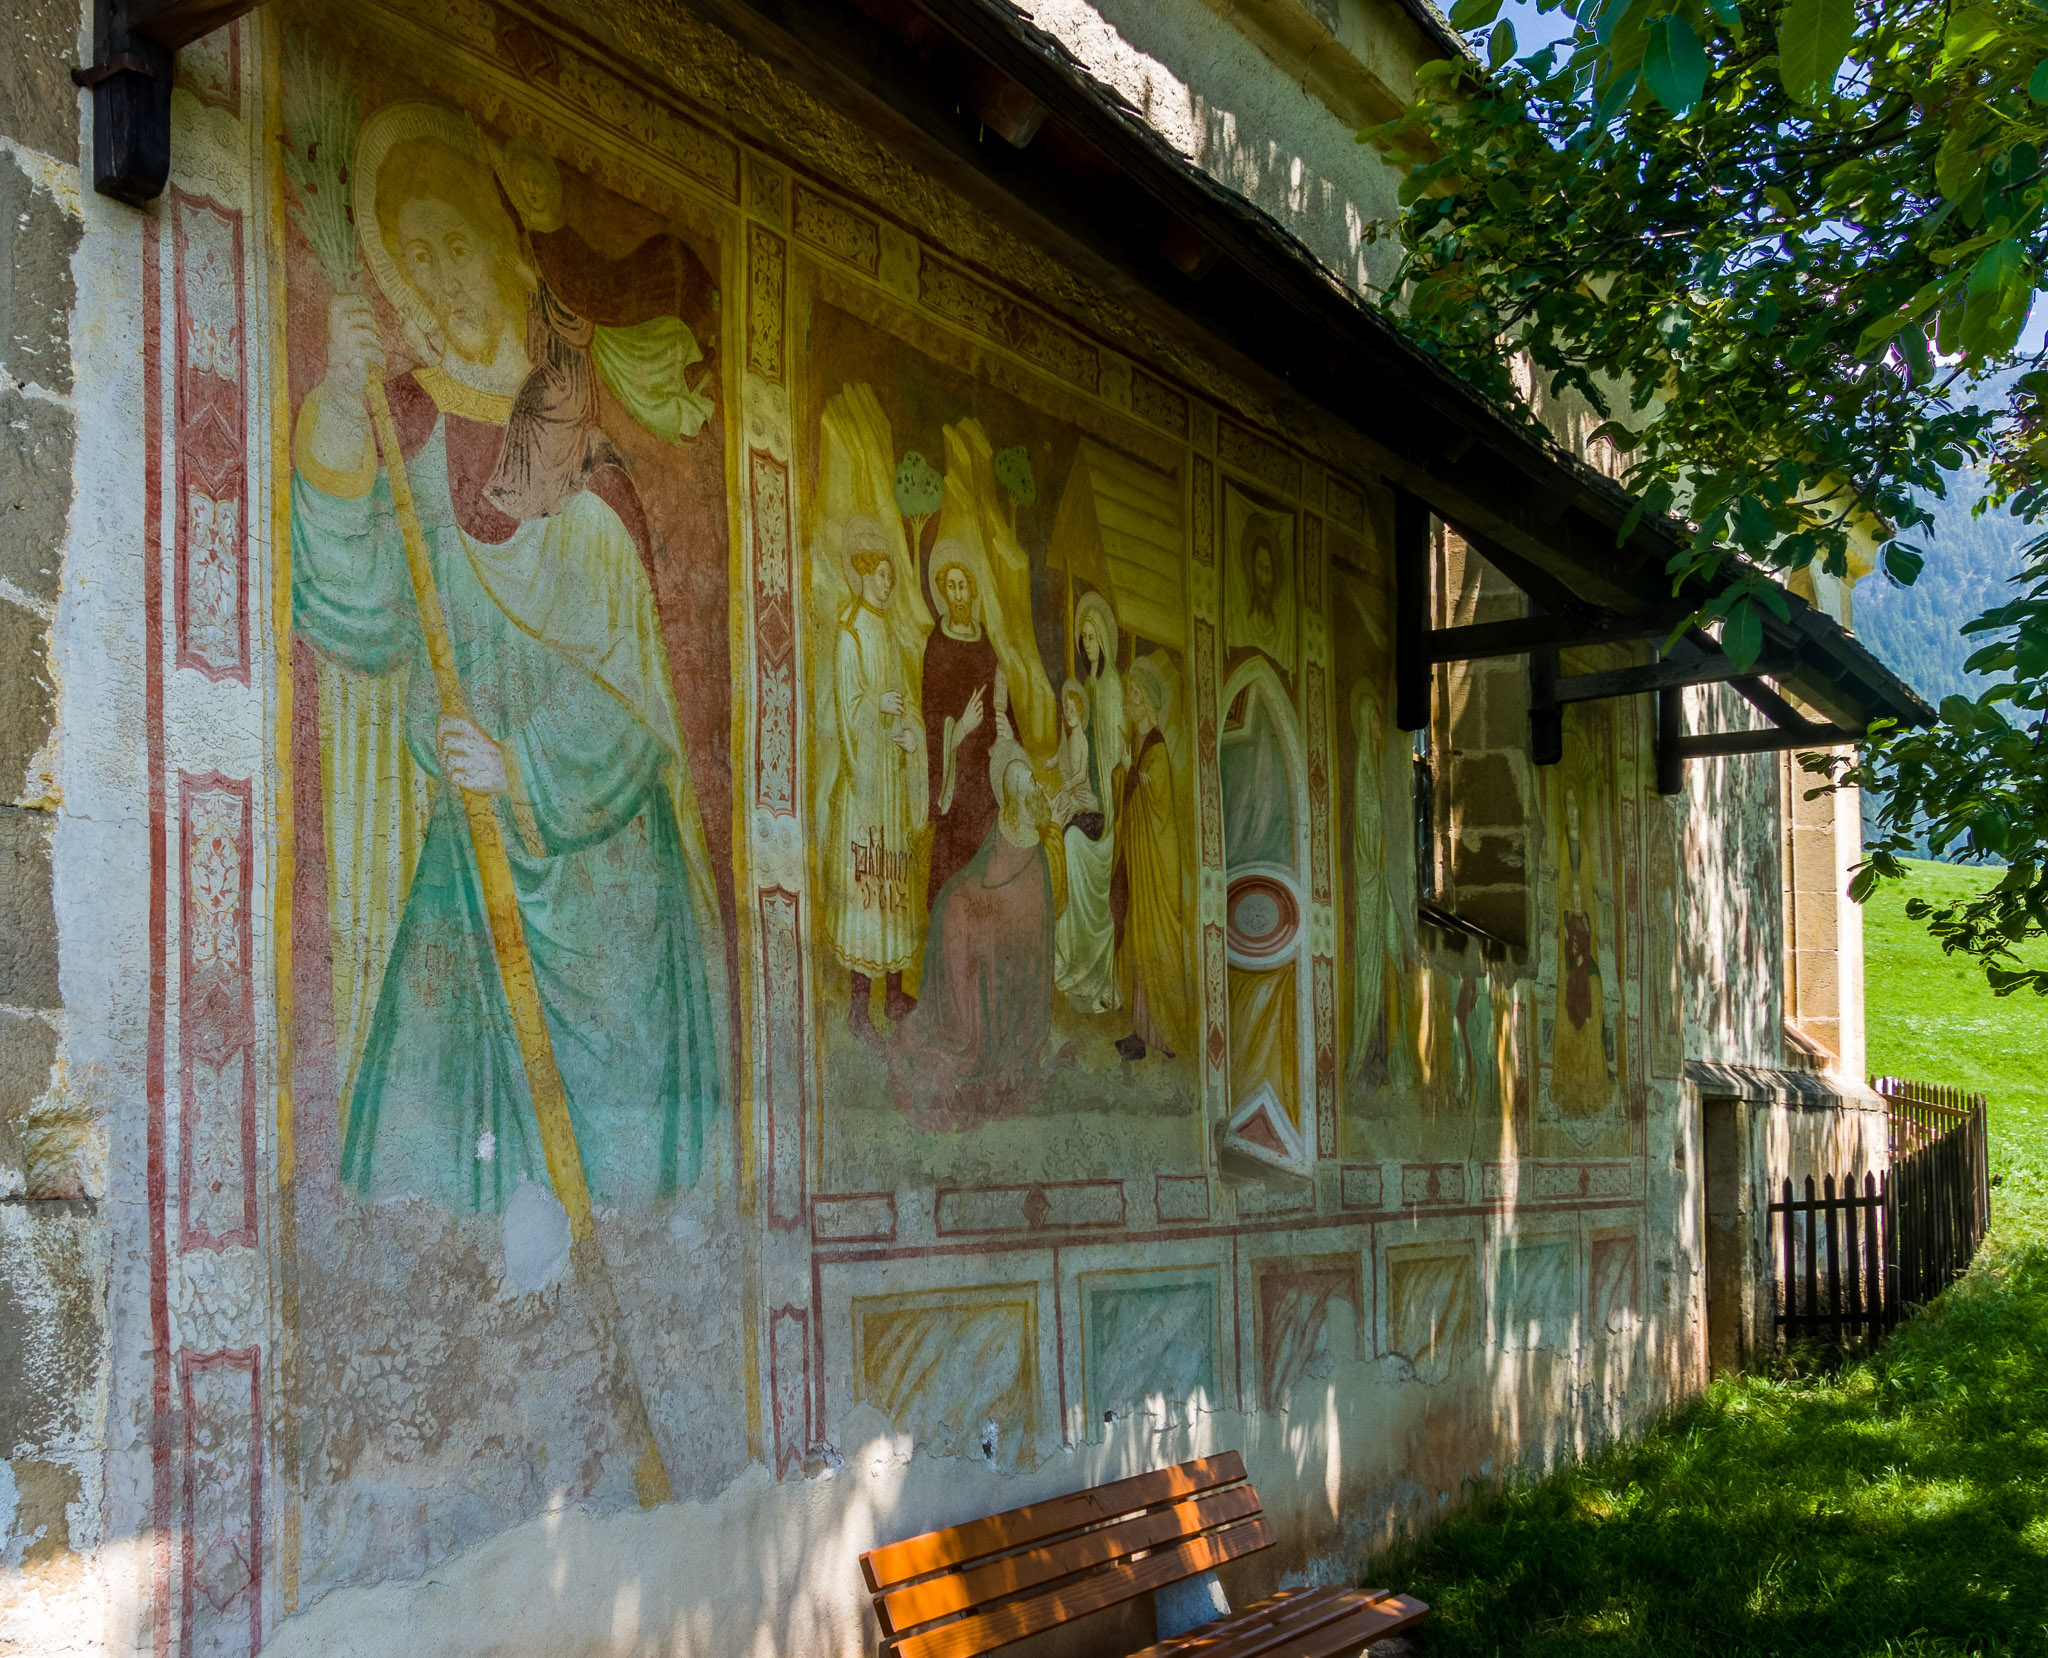 St. Valentin frescos